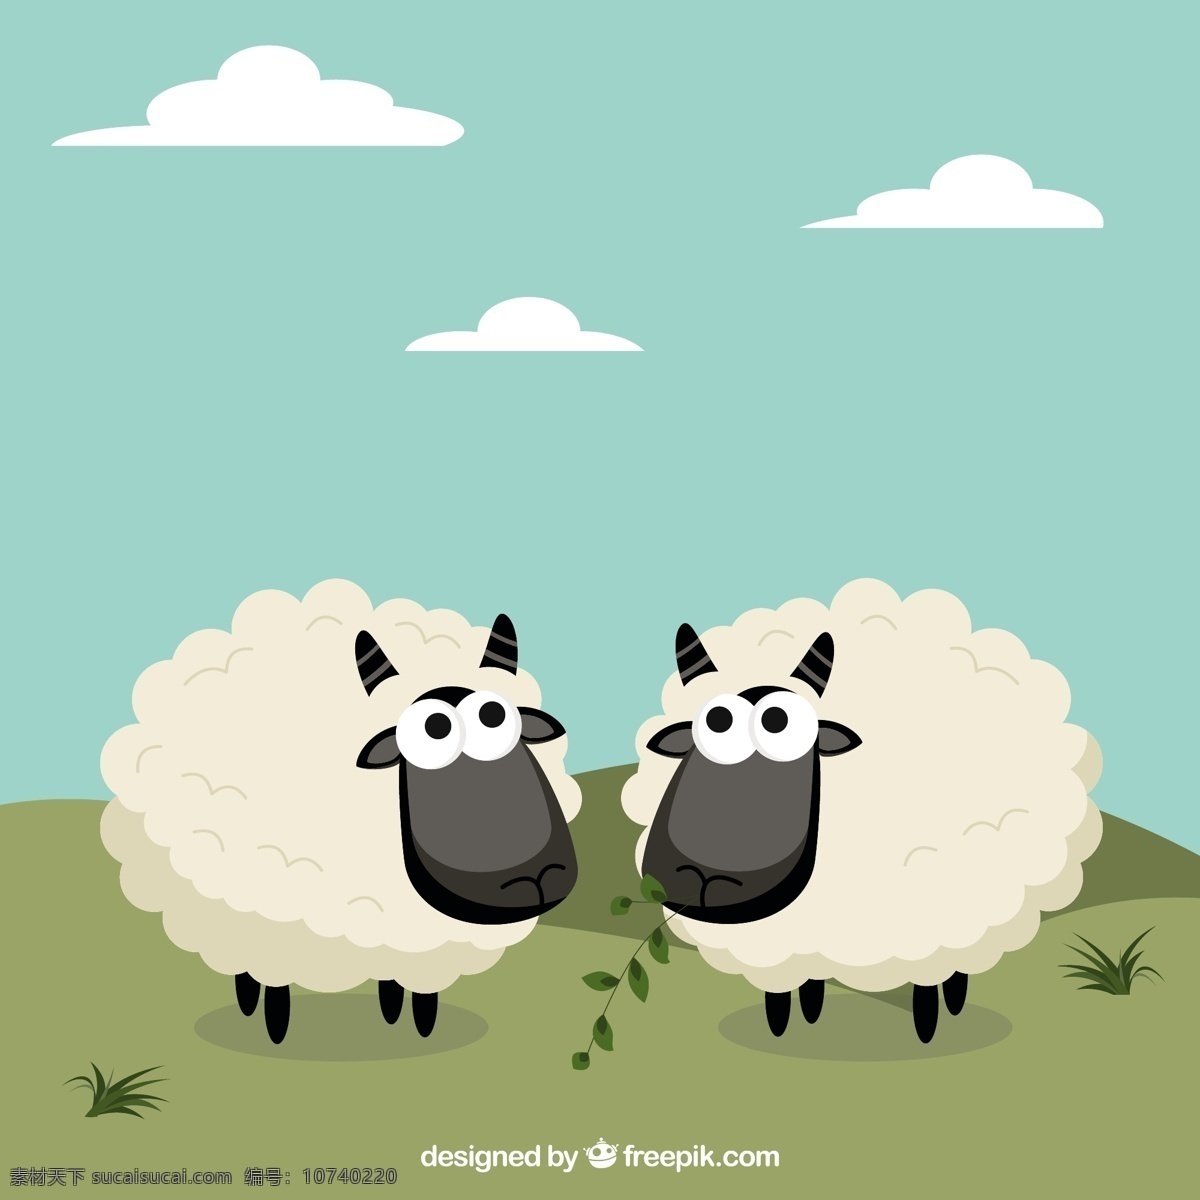 可爱 的卡 通 风格 绵羊 动物 卡通 弹簧 农场 羊的时候 可爱的 农场动物 可爱的动物 卡通动物 春天的时候 吃草 毛茸茸的 青色 天蓝色